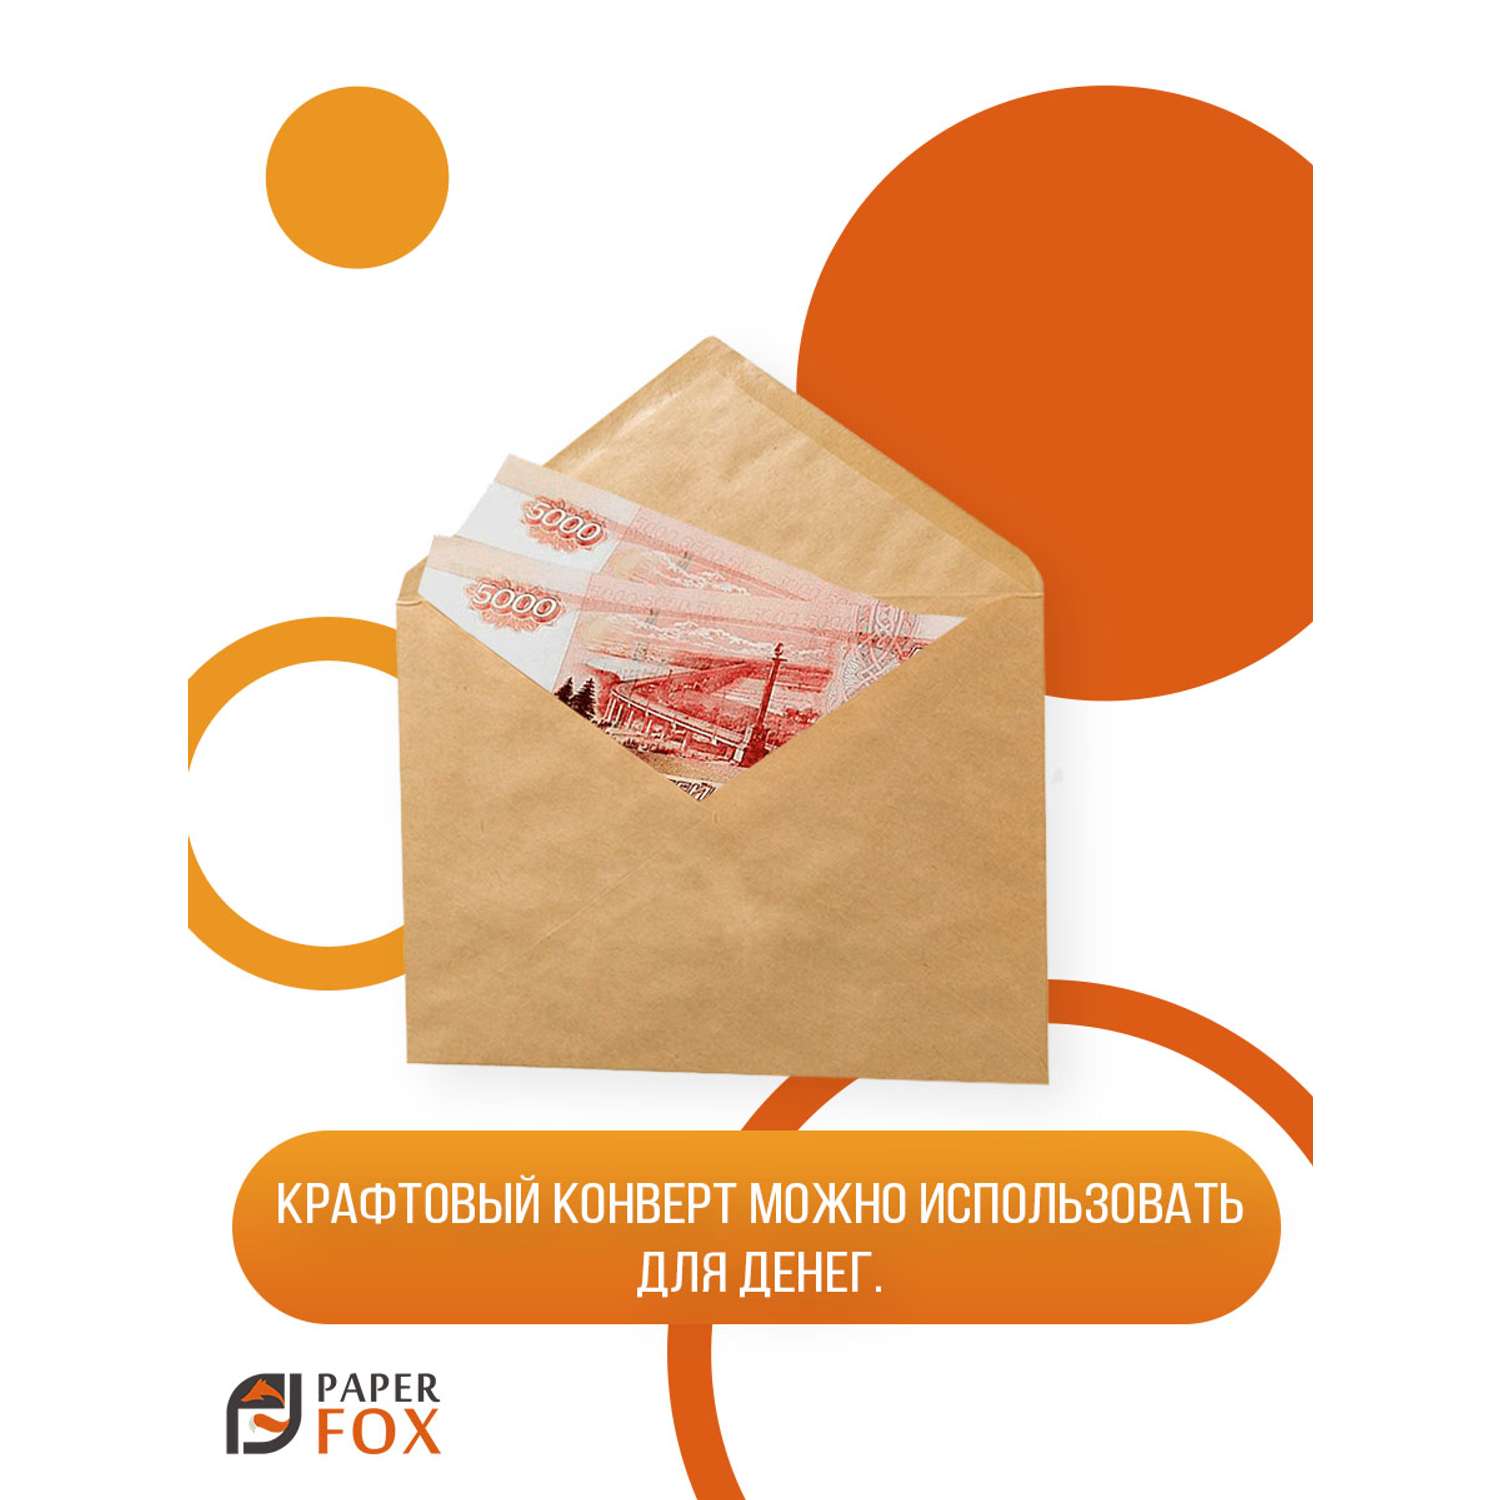 Набор открыток PaperFox пригласительных Единорожек 5 открыток 5 конвертов - фото 4